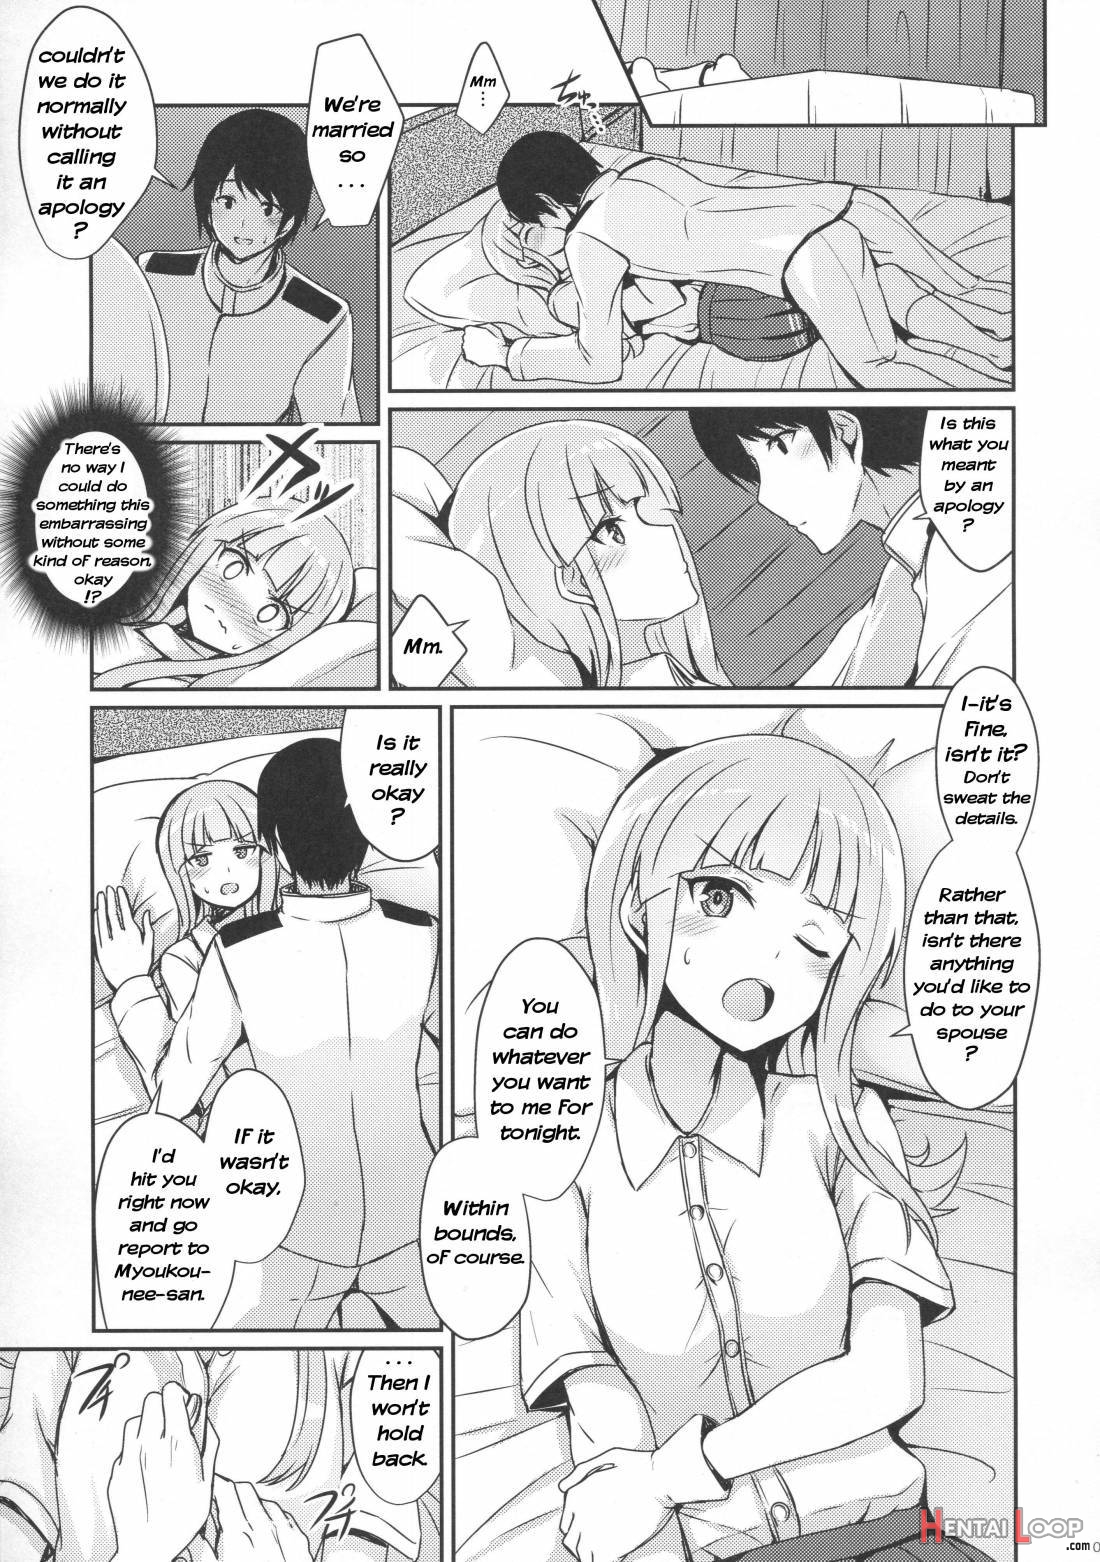 Hatsukaze no Kekkon Shoya page 6